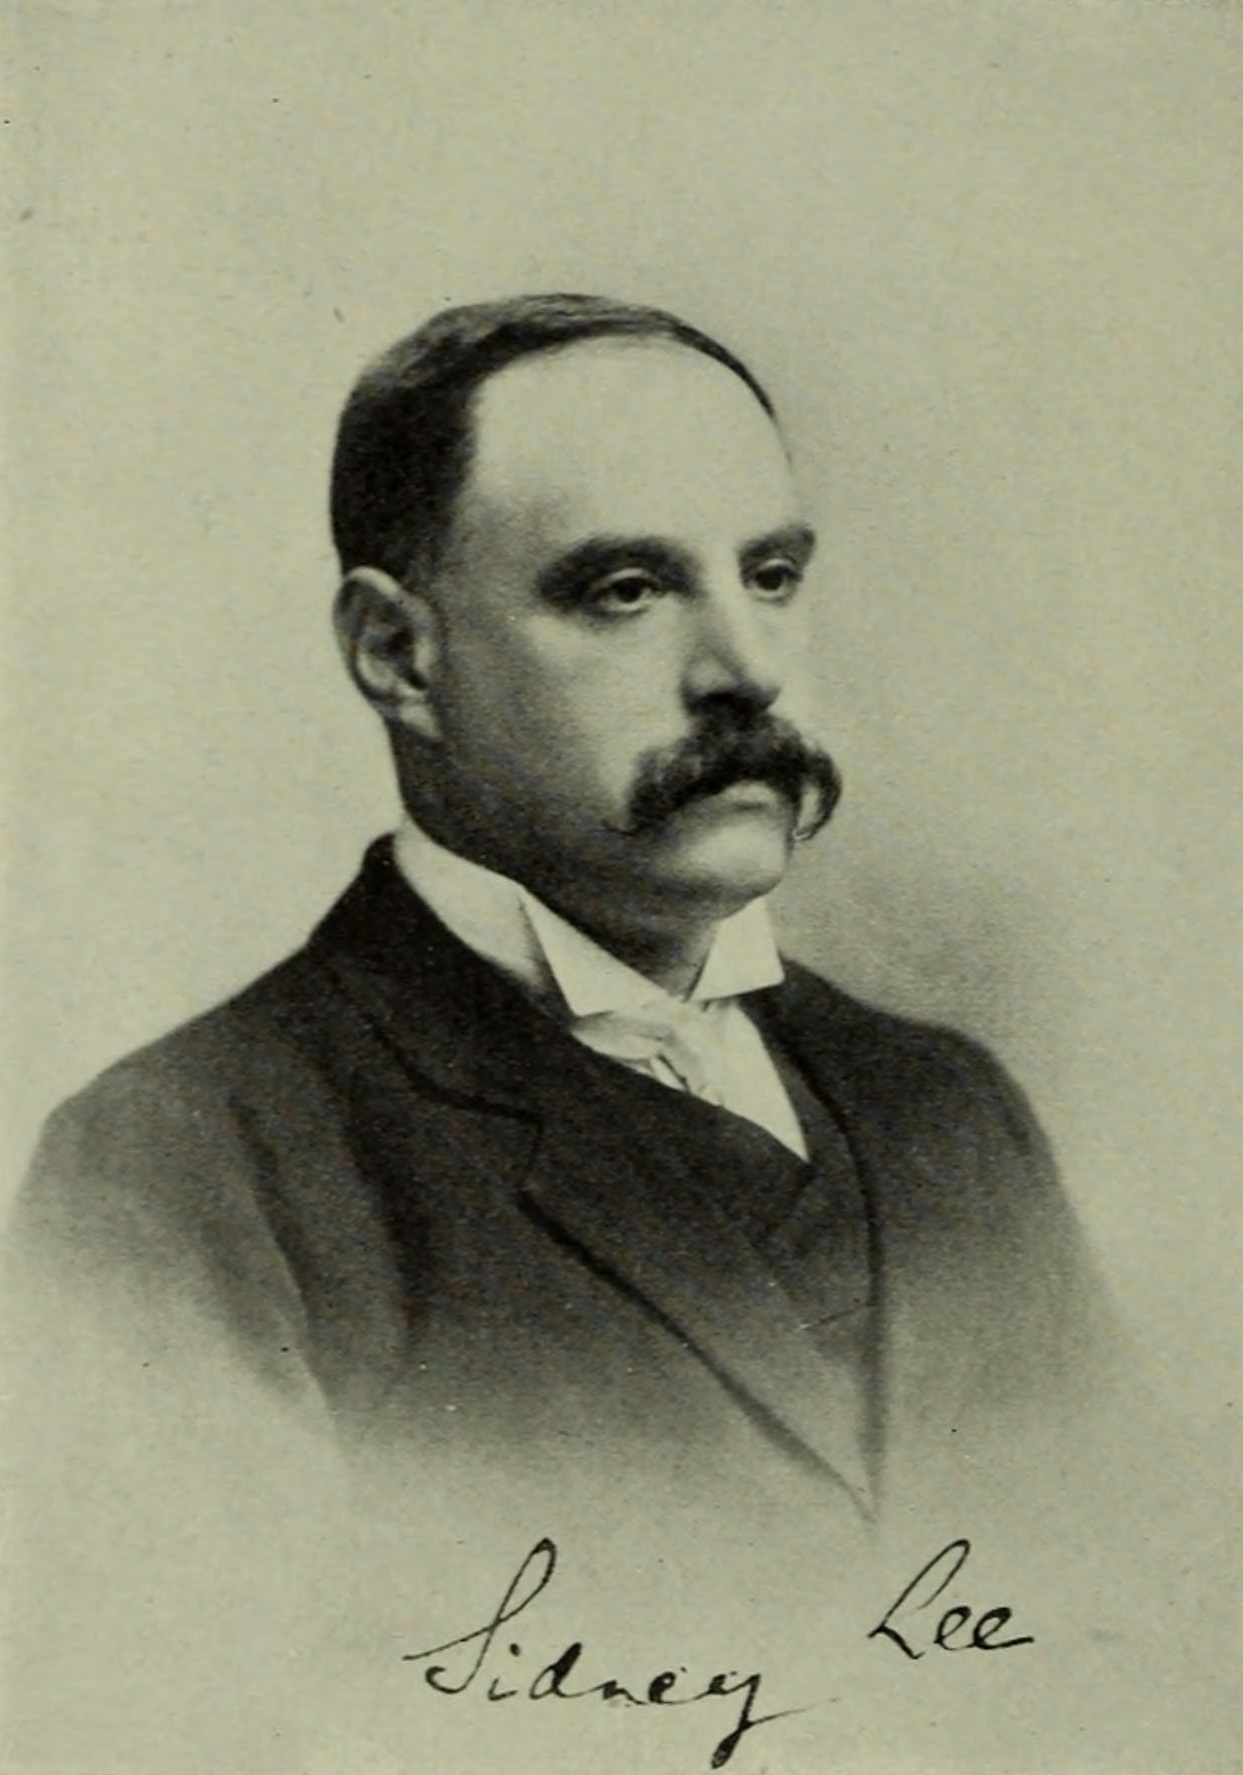 Sidney Lee (c. 1906).